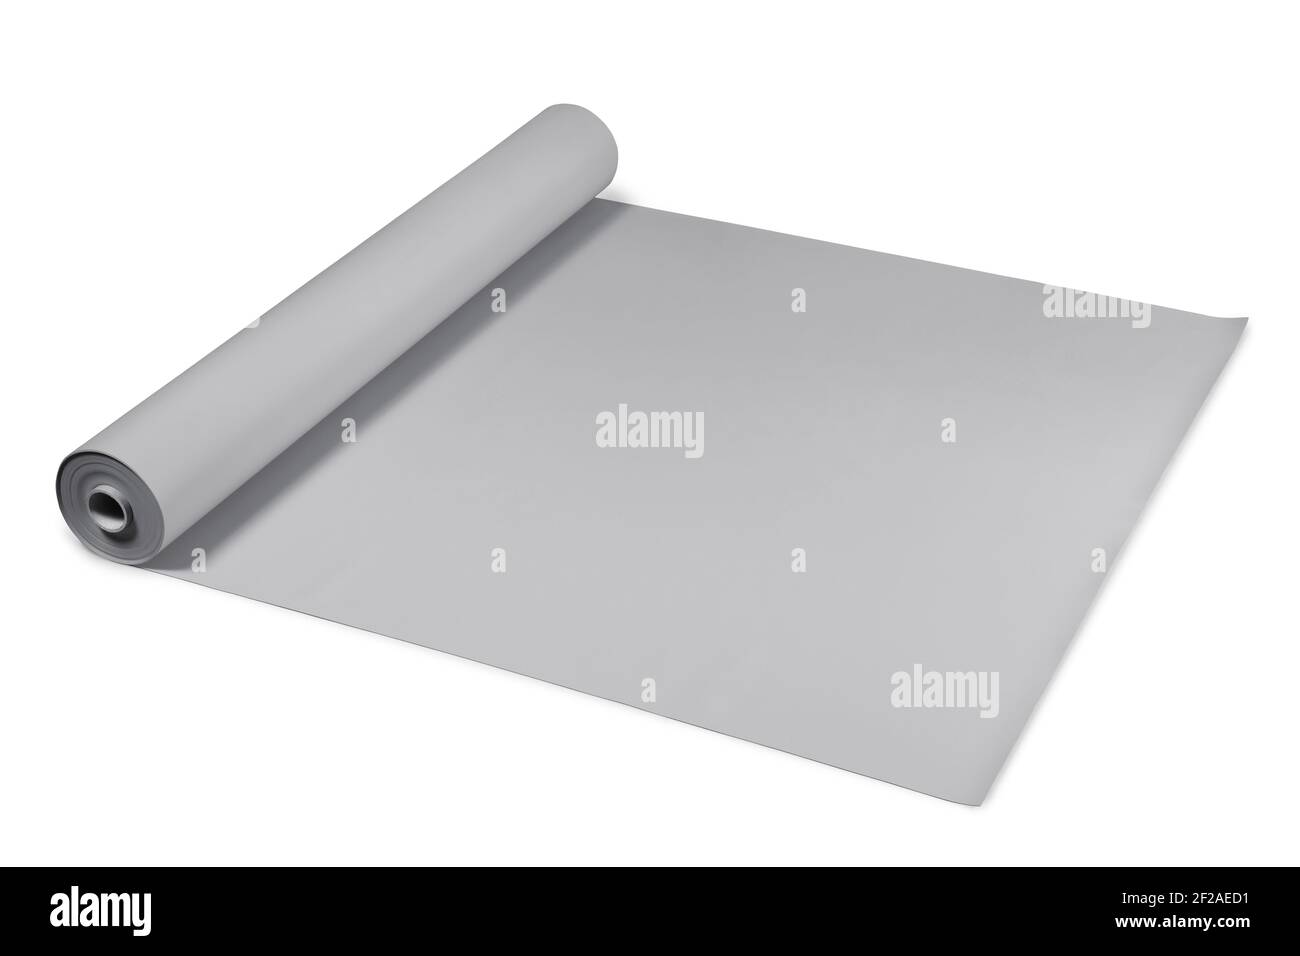 Rouleau de plastique stratifié de couleur grise Photo Stock - Alamy